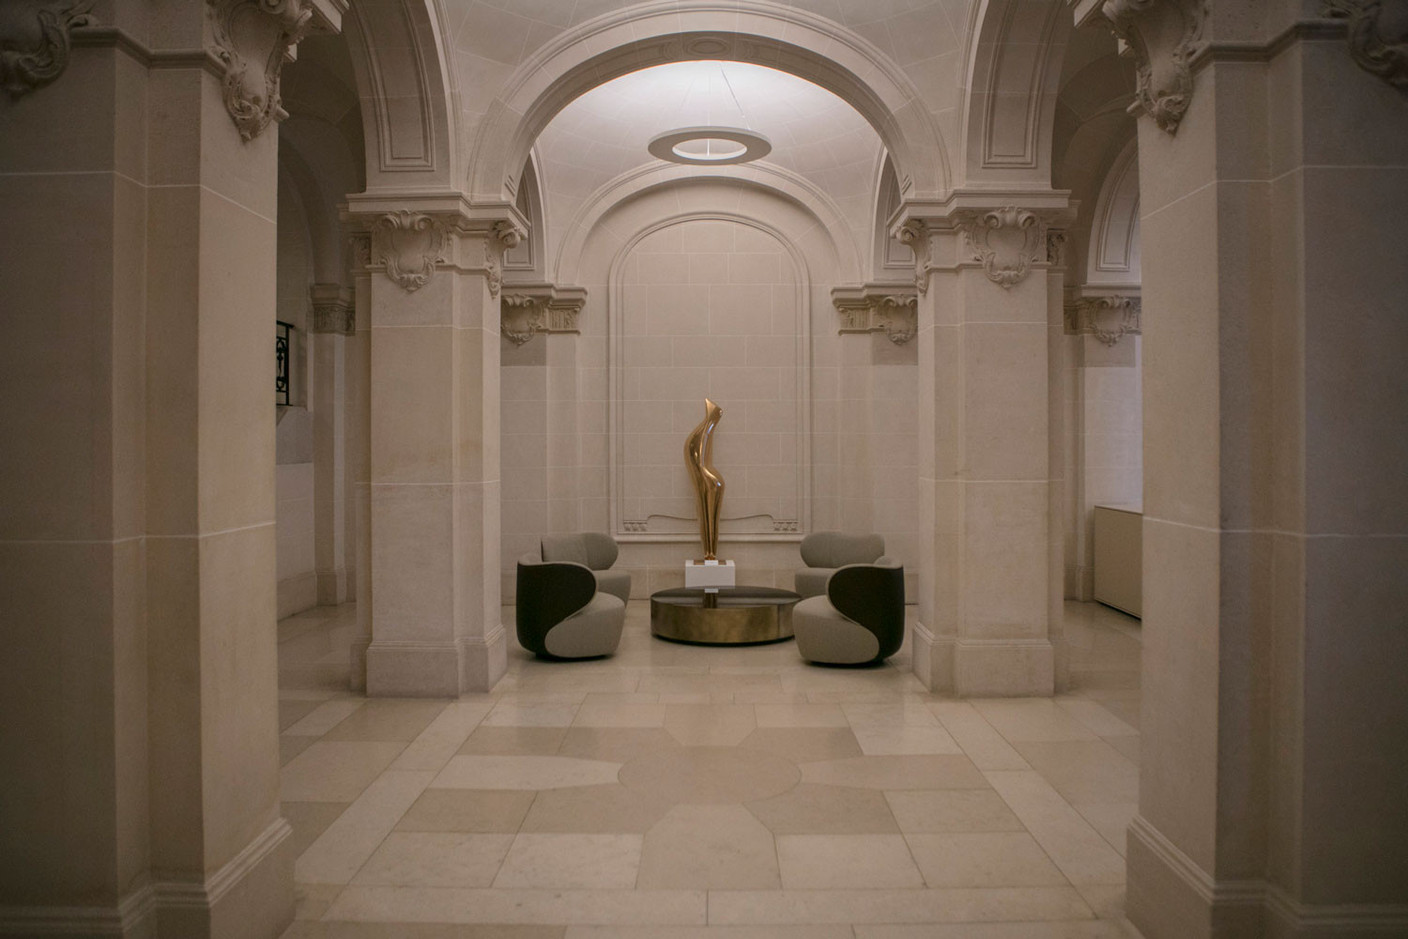 Le mobilier contemporain et l’art complètent l’architecture ancienne. (Photo: Maison Moderne/archives)